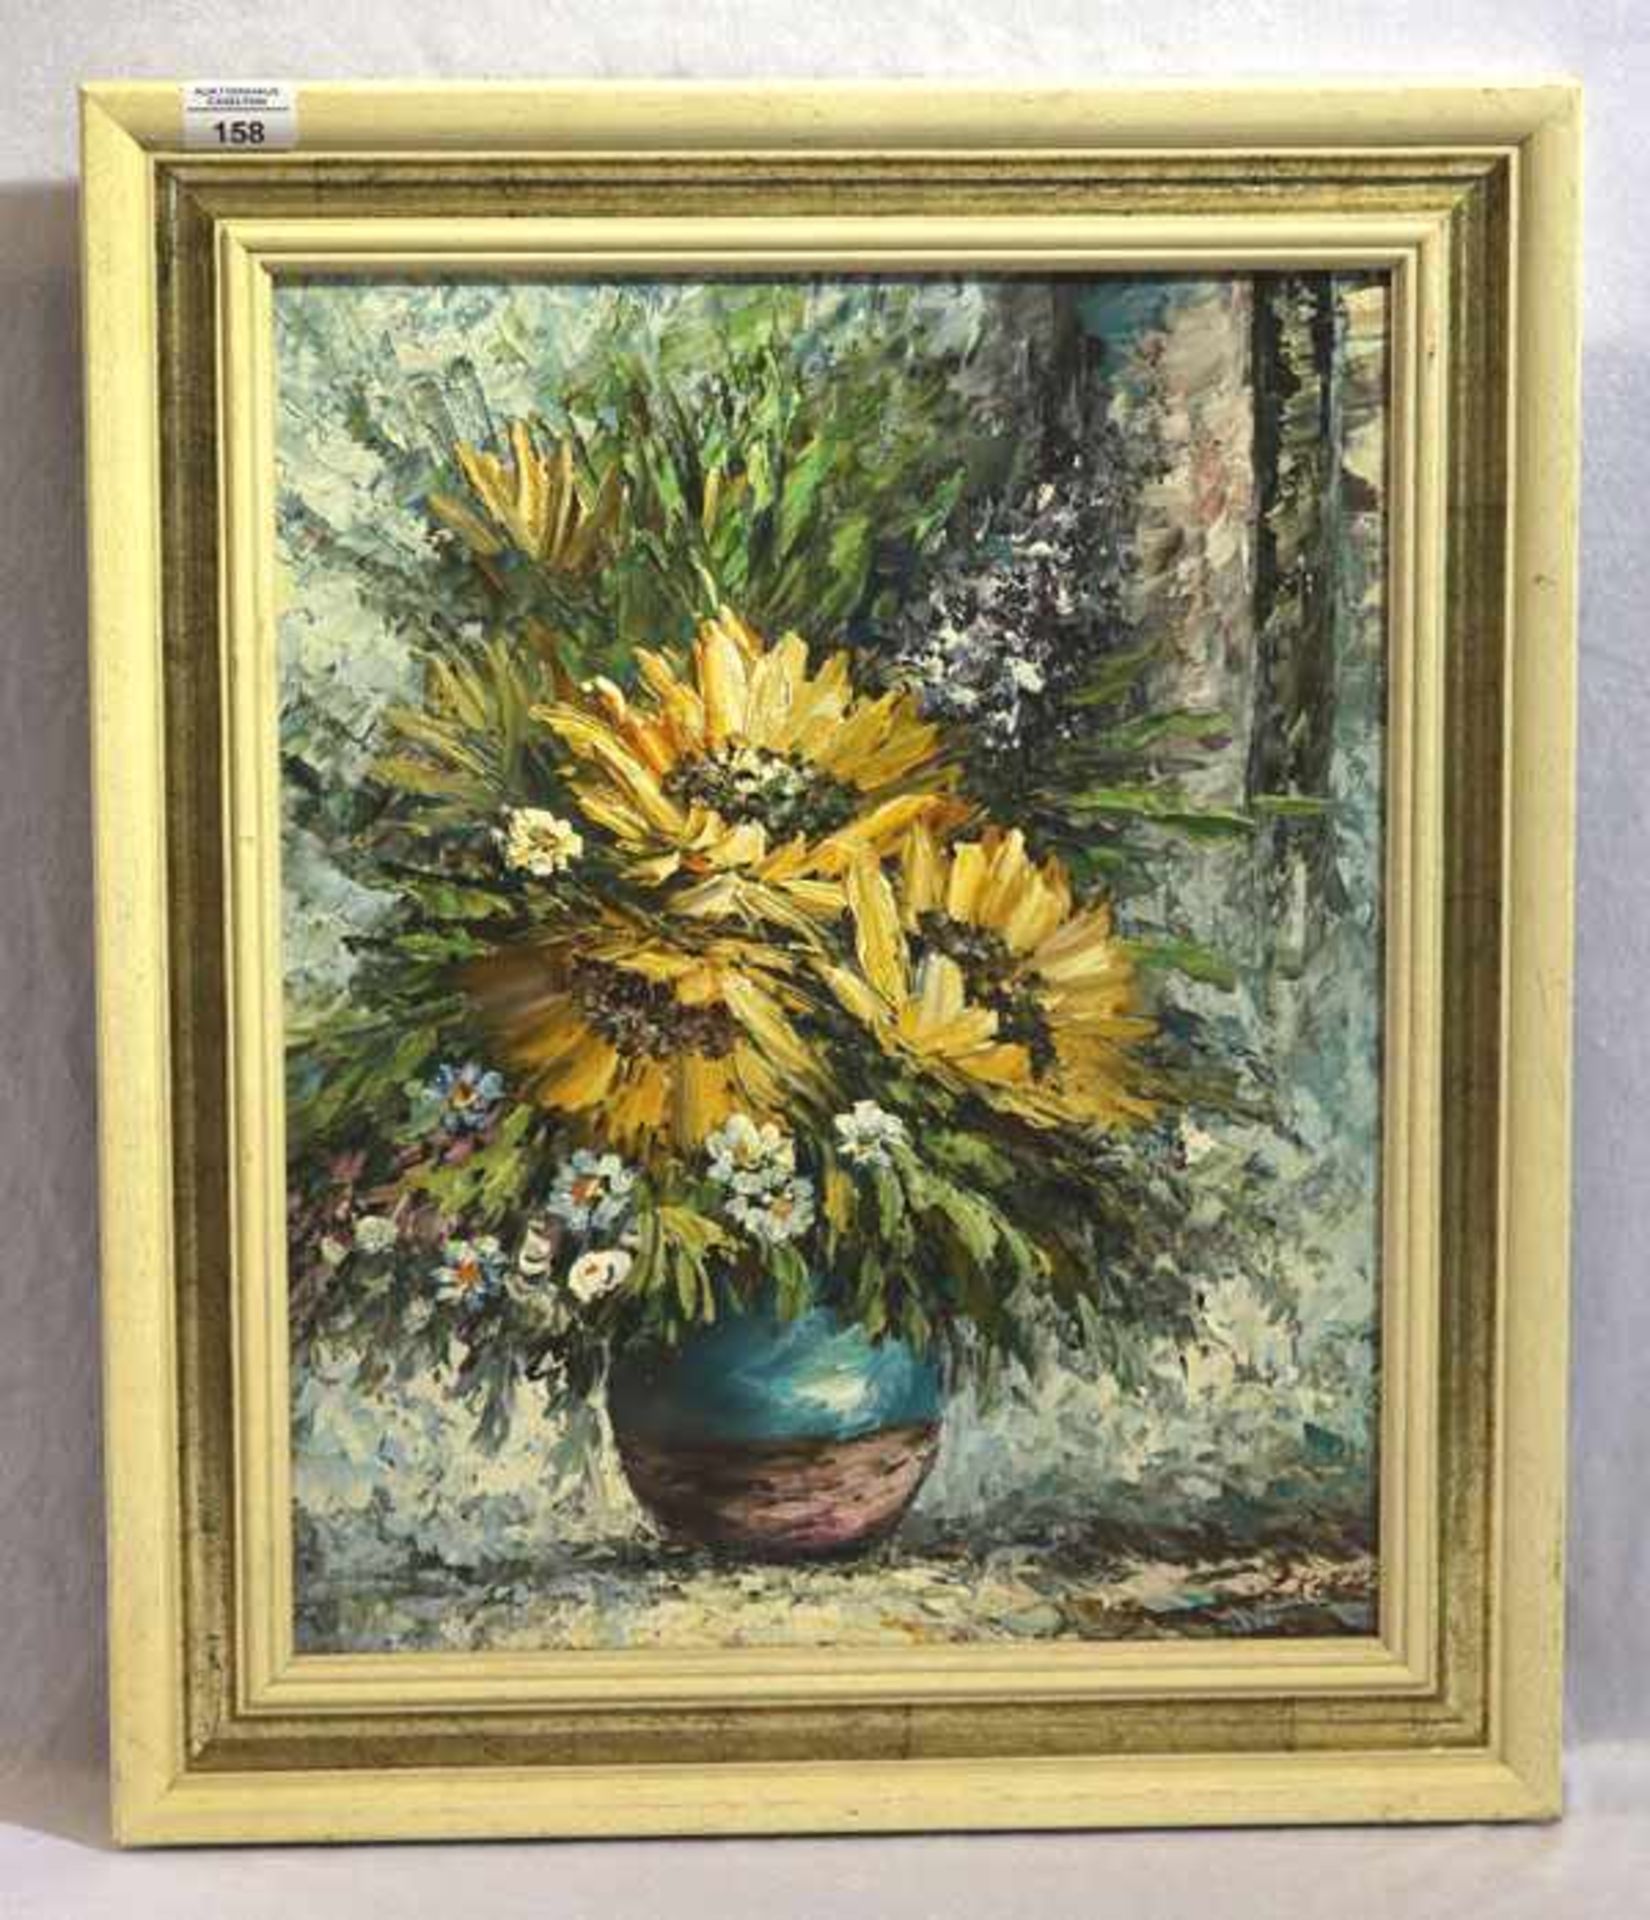 Gemälde ÖL/LW 'Sonnenblumen in Vase', signiert L. Klein, gerahmt, Rahmen leicht bestossen, incl.